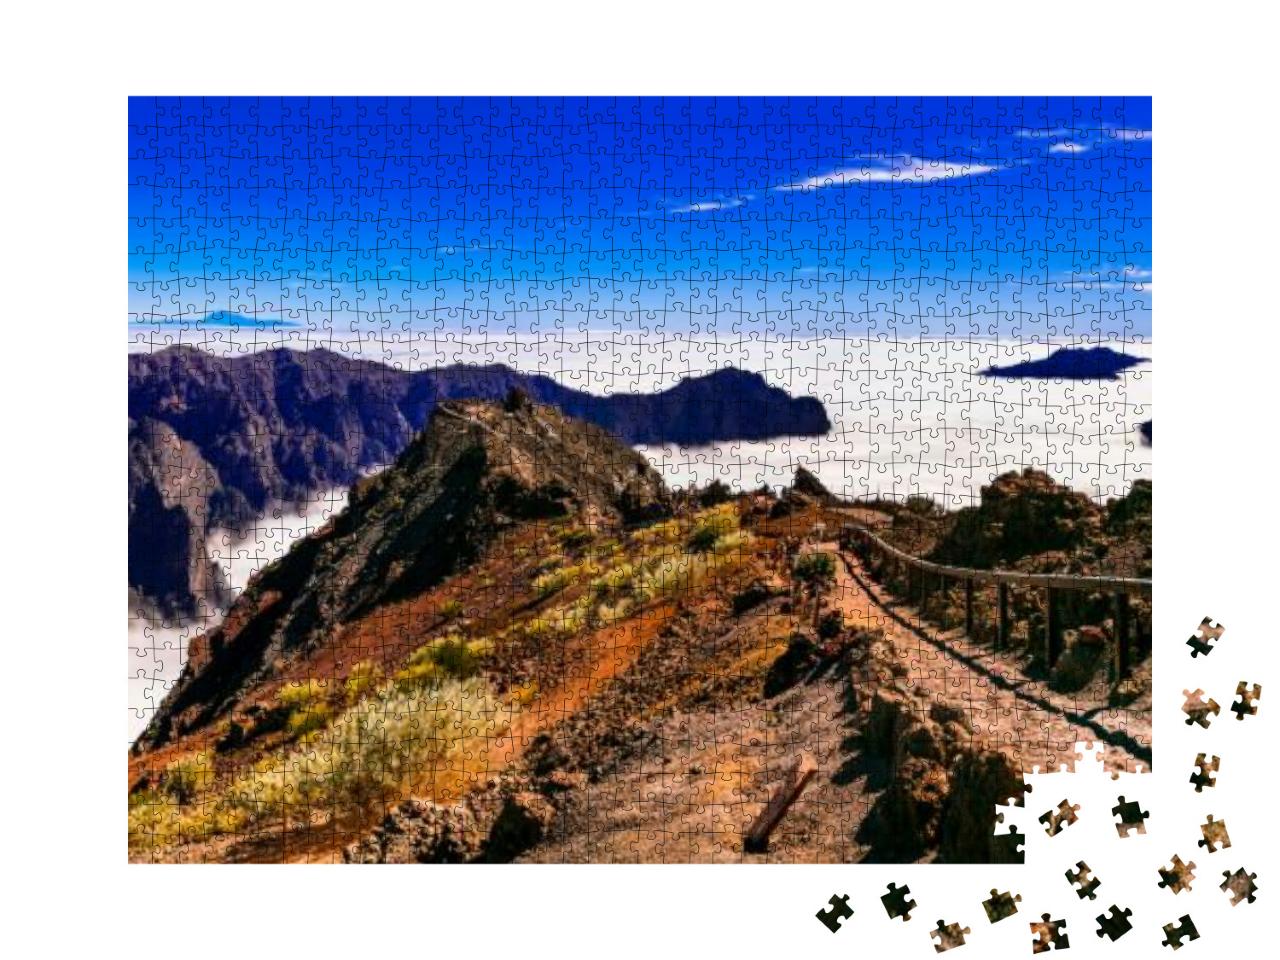 Puzzle 1000 Teile „Weg zum Himmel. Mirador Roque de los Muchachos - La Palma, Kanarische Inseln“